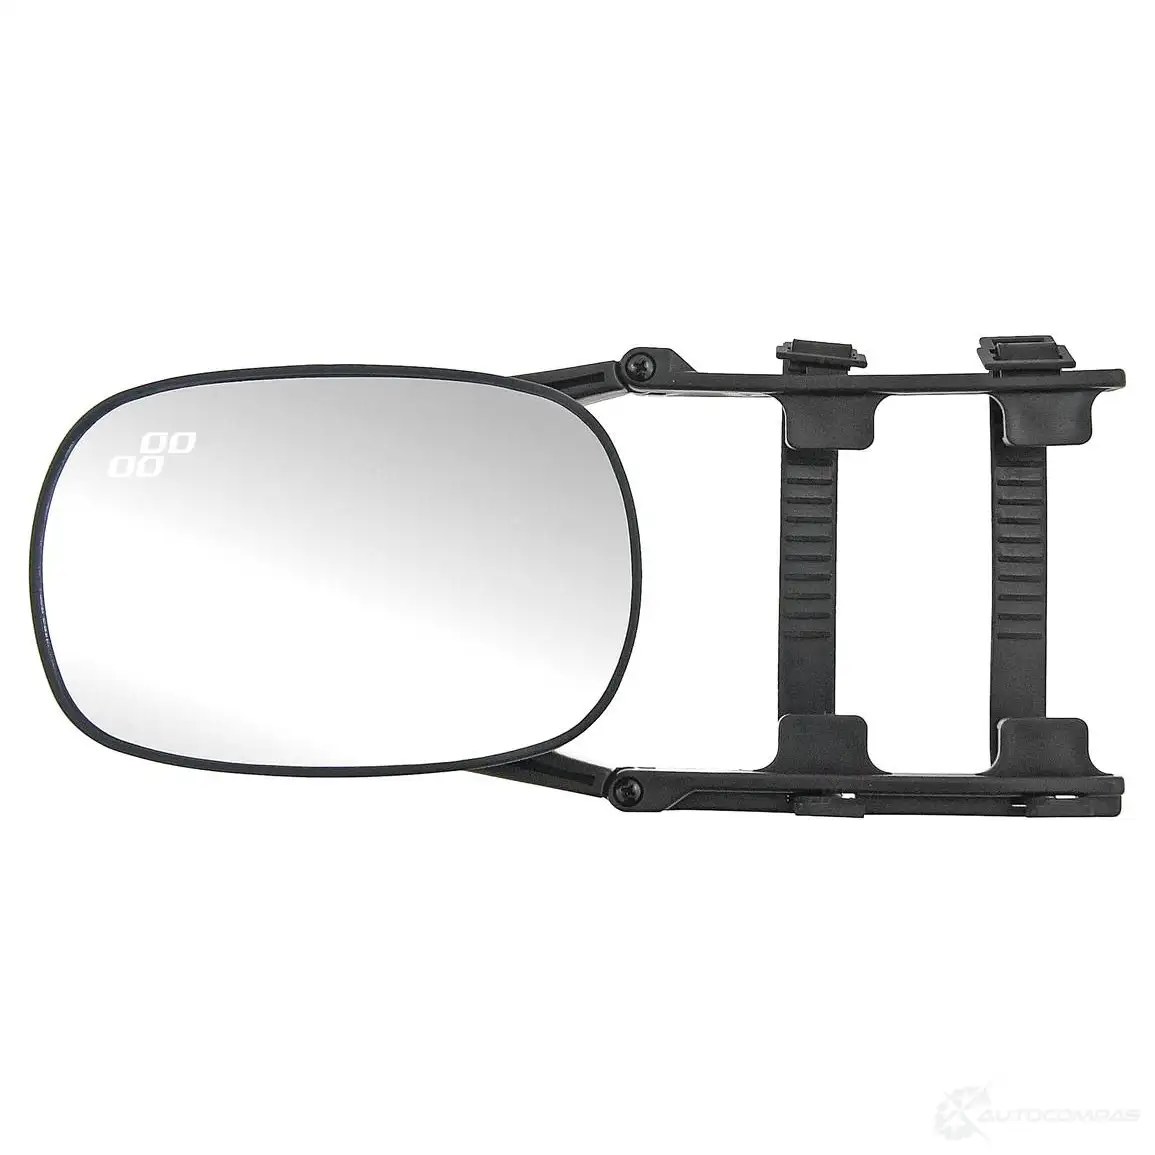 Караван зеркал. Зеркало дополнительное Караван. Зеркала для прицепа. Доп.зеркала для буксировки прицепа. Расширитель зеркал для прицепа.